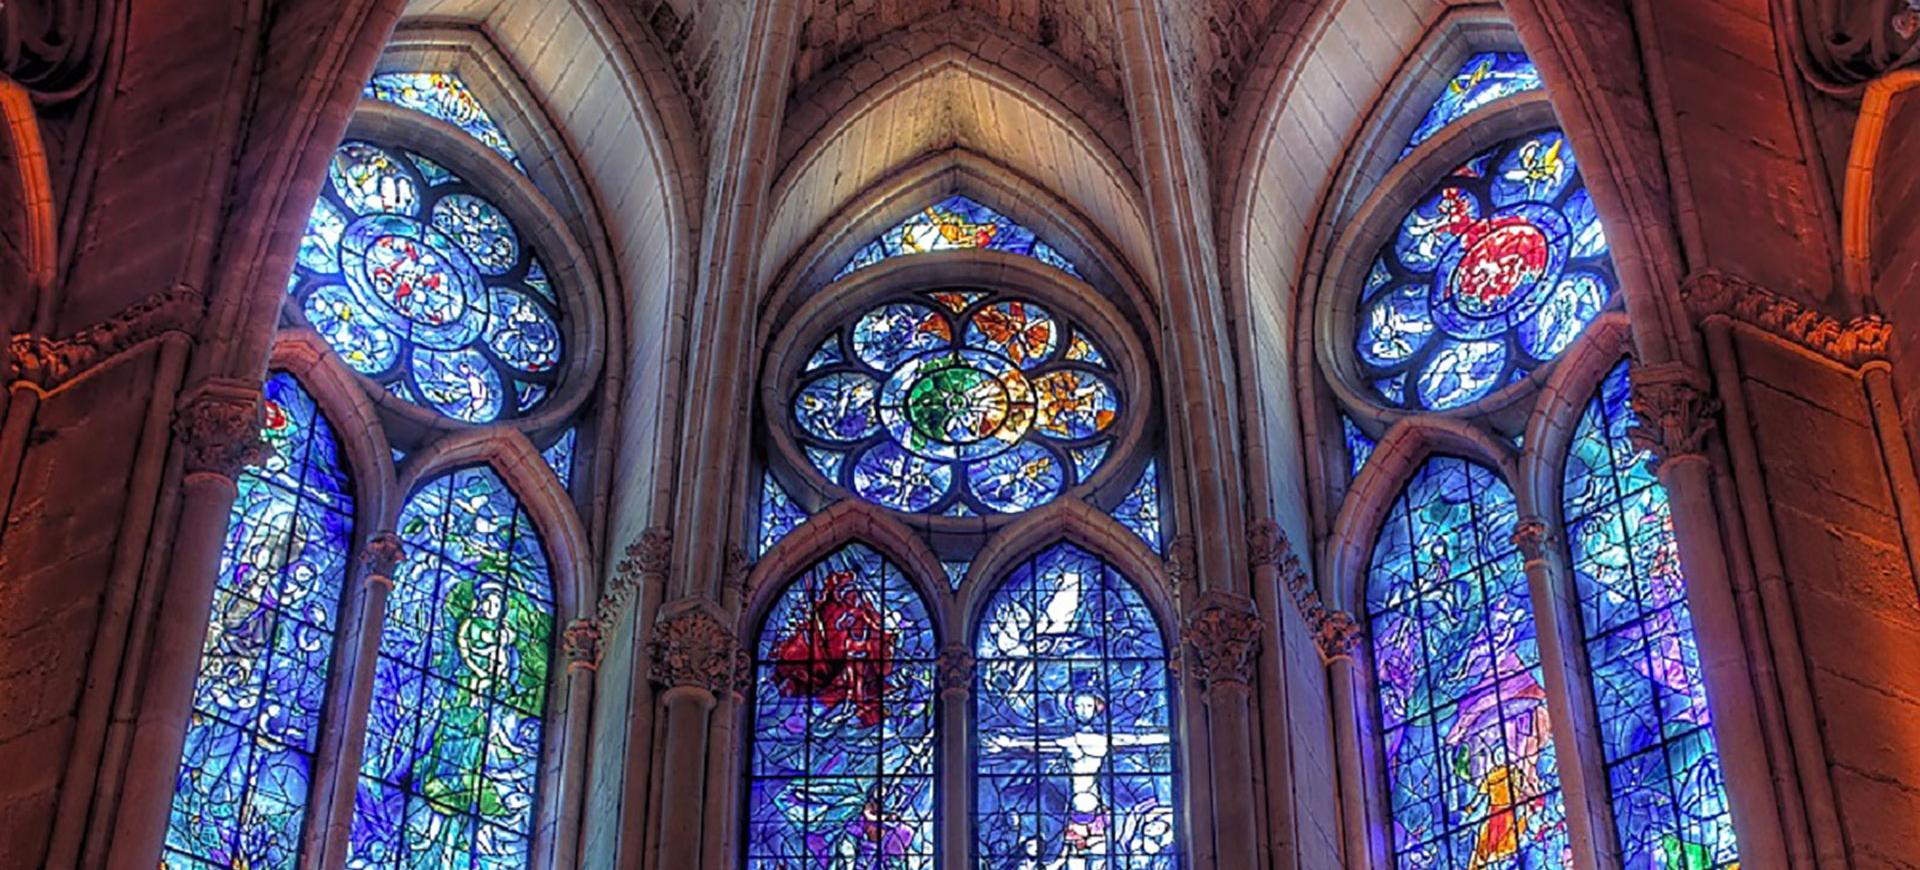 Vitraux Chagall - Cathédrale de Reims